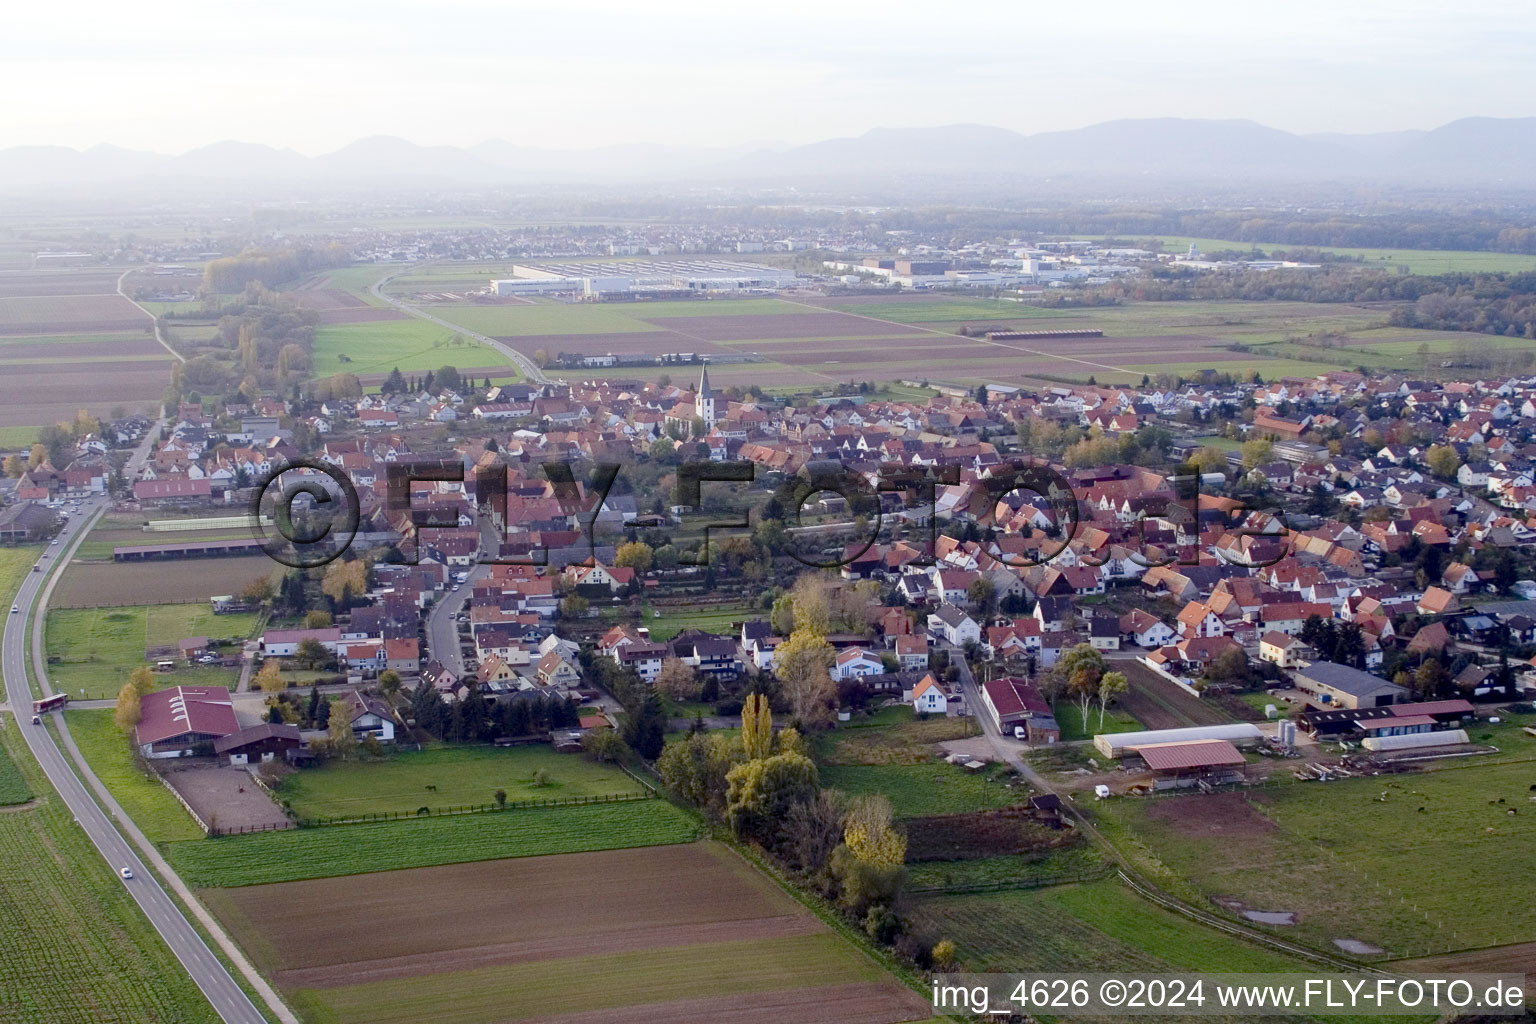 Schrägluftbild von Dorf - Ansicht am Rande von landwirtschaftlichen Feldern und Nutzflächen in Ottersheim bei Landau im Bundesland Rheinland-Pfalz, Deutschland